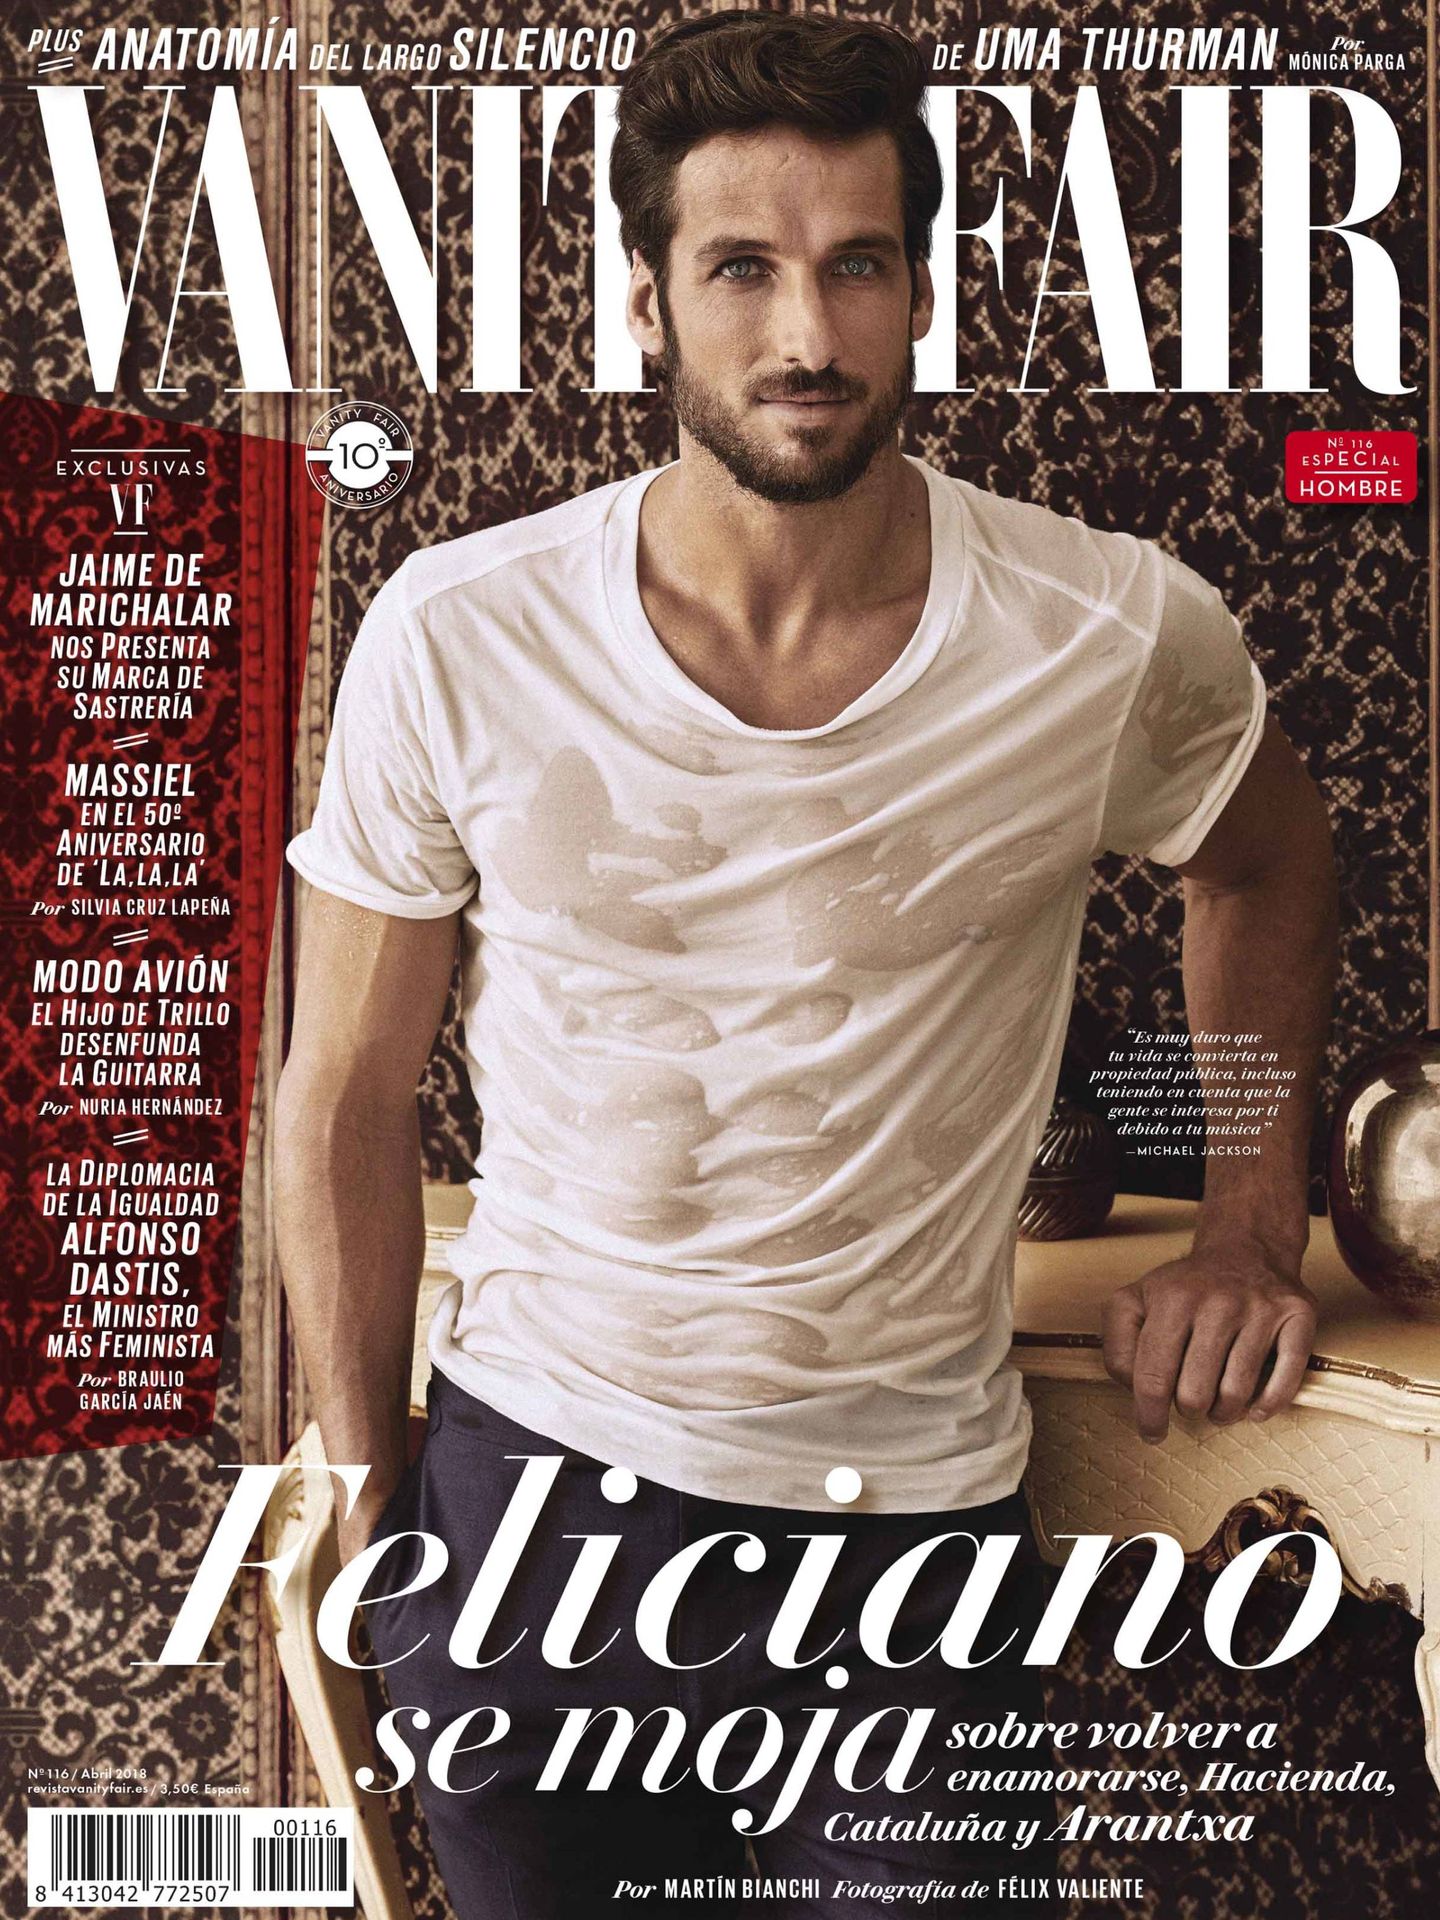 La 'Vanity Fair' con portada de Feliciano López.